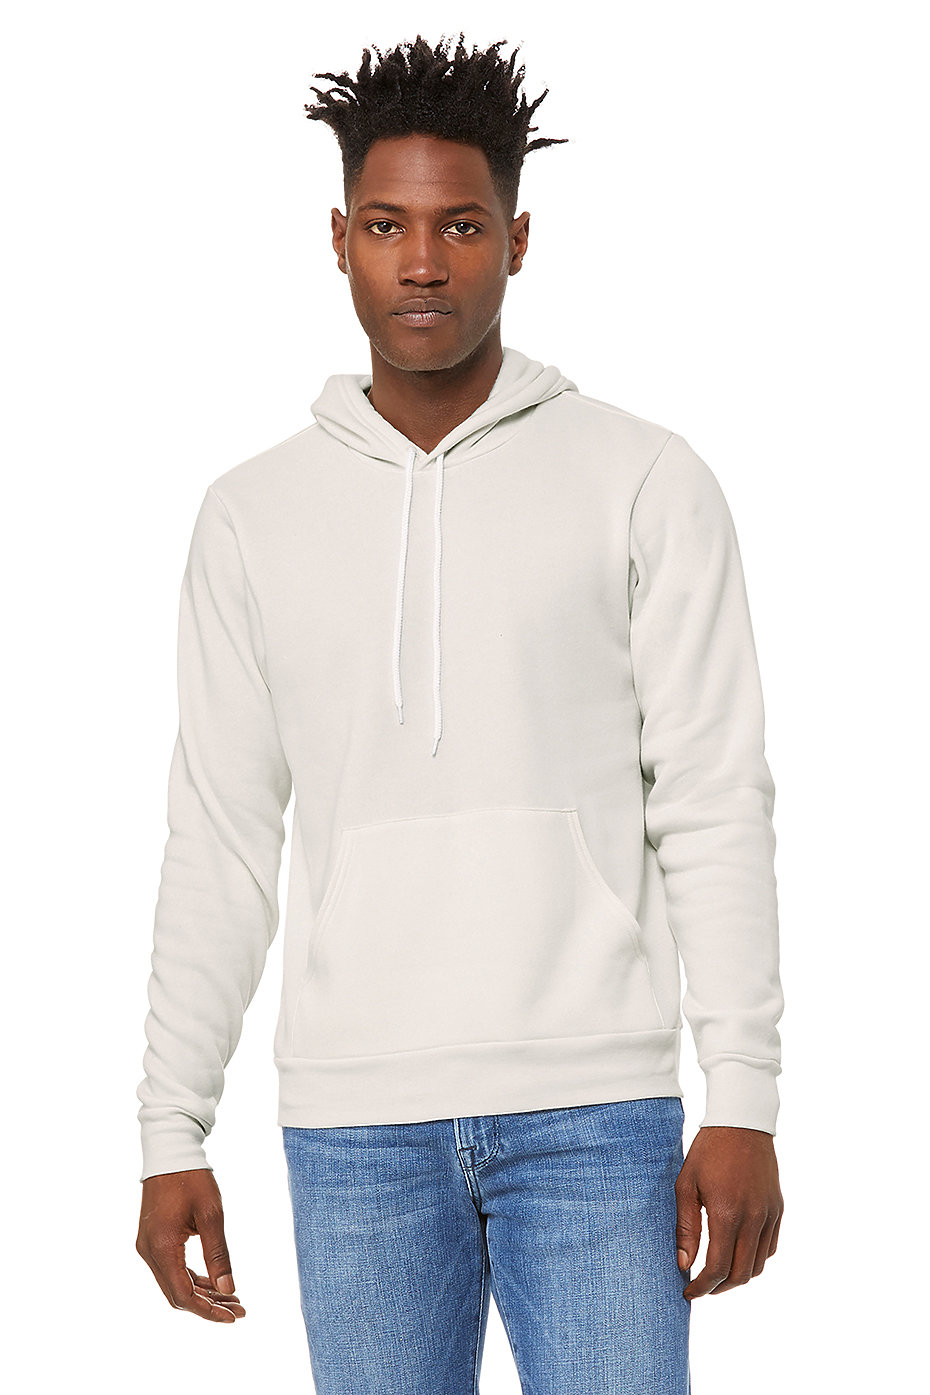 custom hoodies wholesale